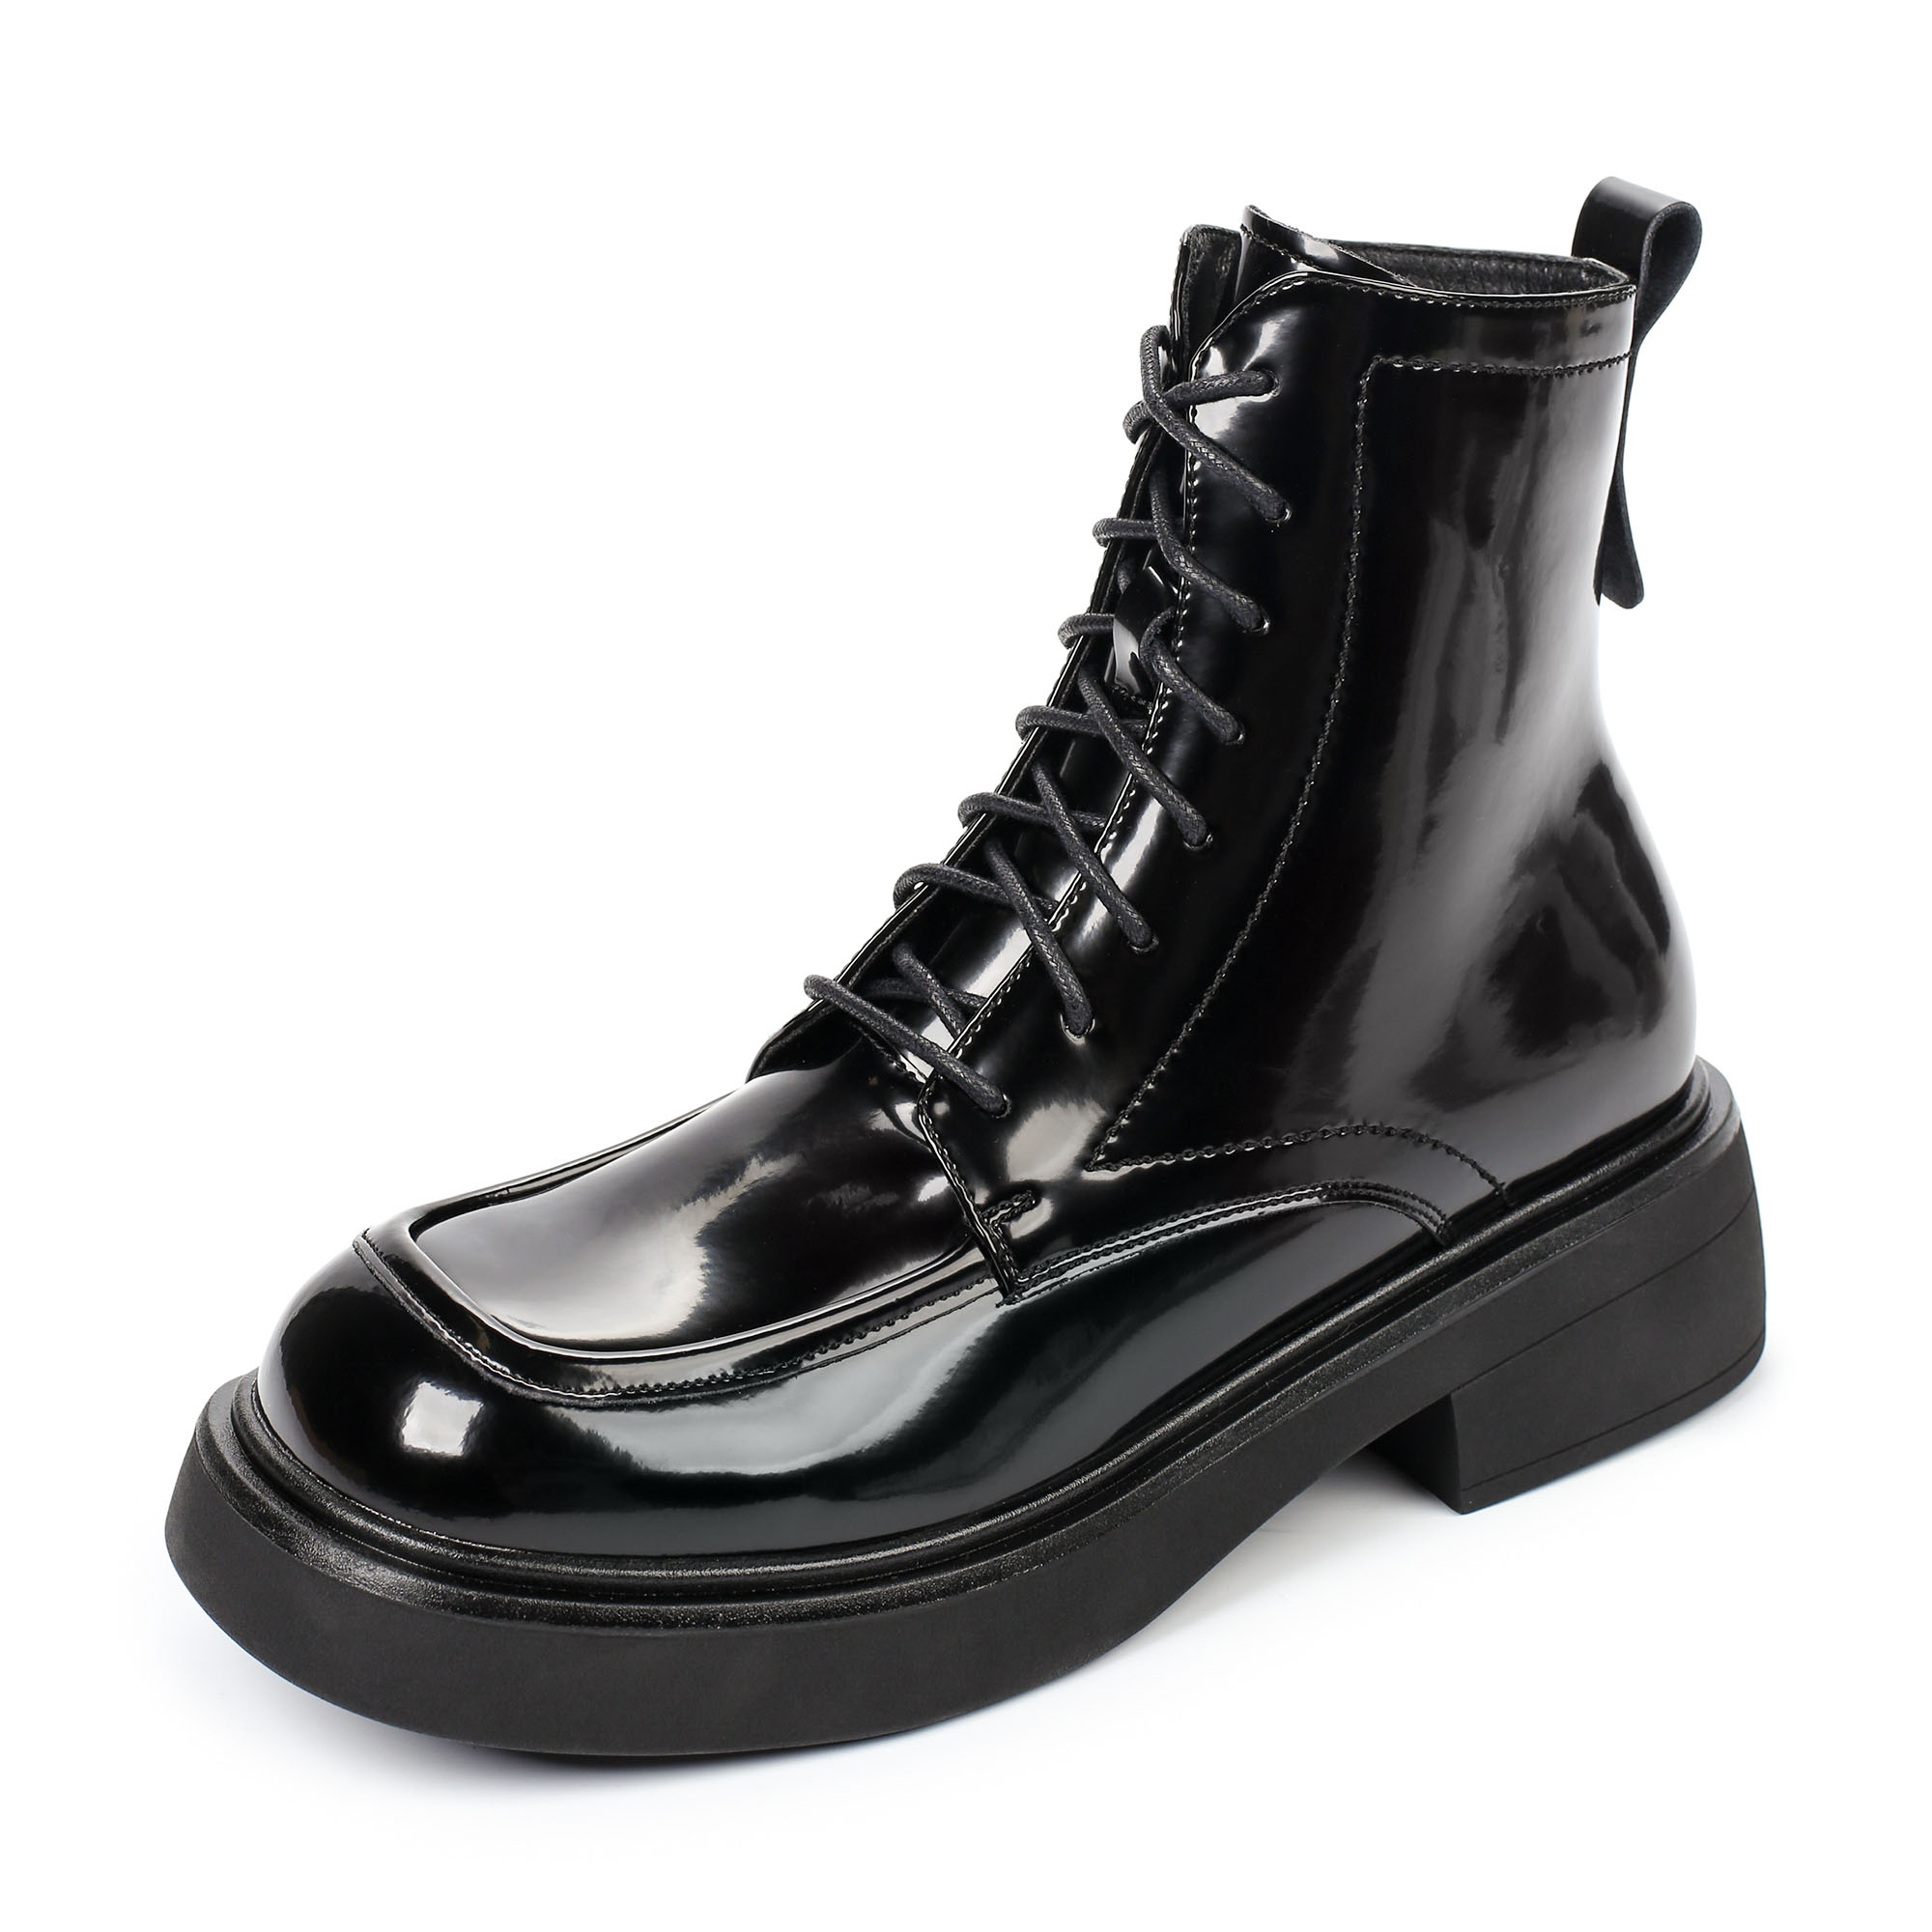 Ботинки Thomas Munz 080-619A-2602, цвет черный, размер 40 - фото 2